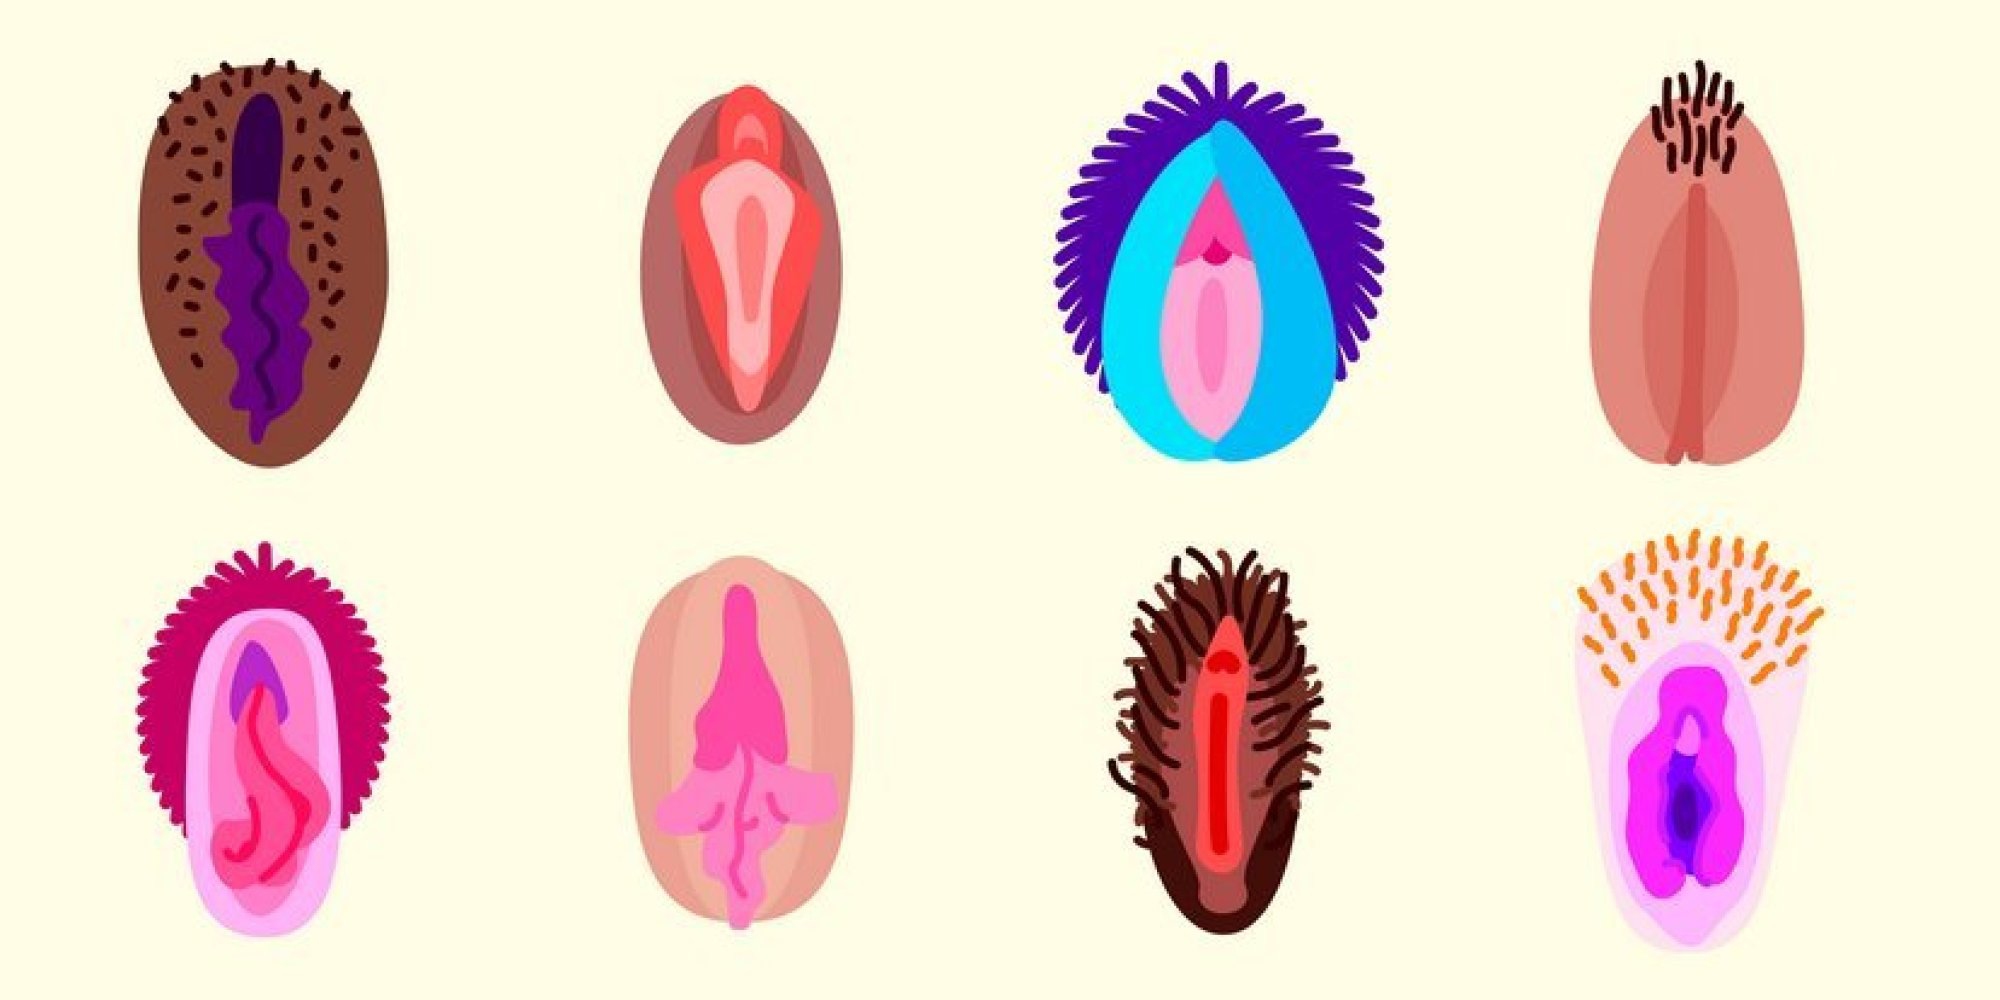 Обвисшие половые губы